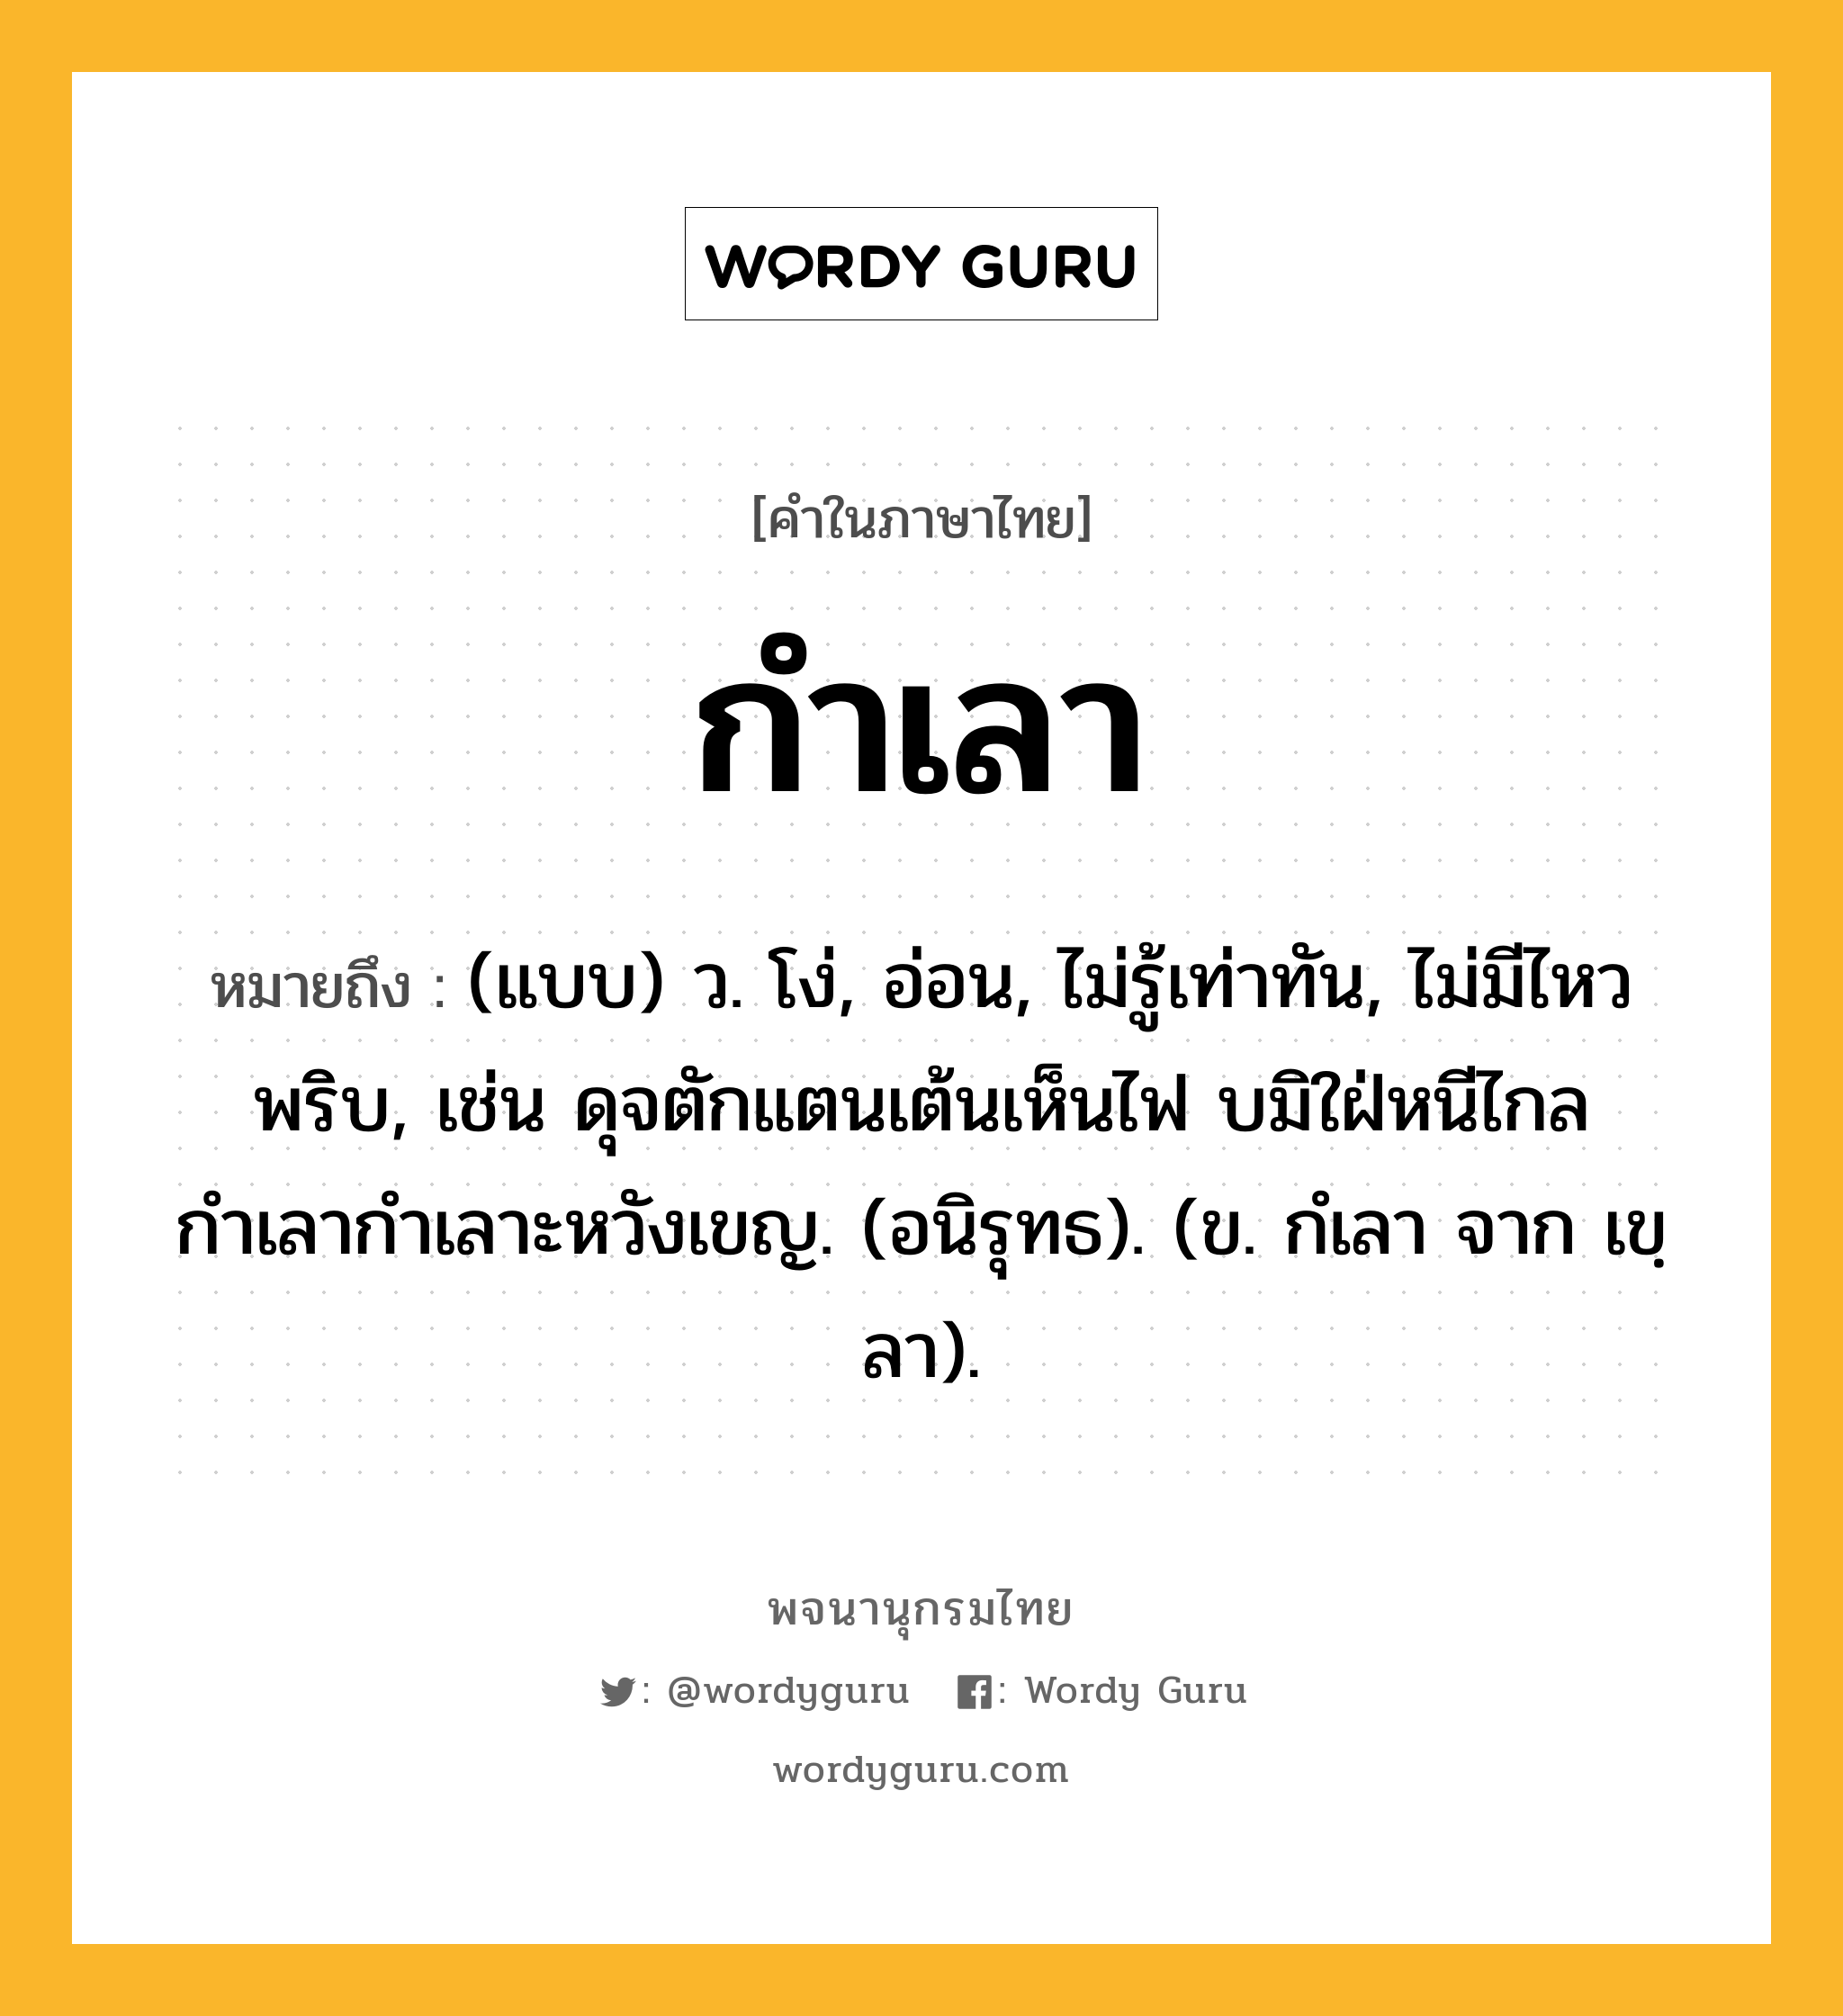 กำเลา ความหมาย หมายถึงอะไร?, คำในภาษาไทย กำเลา หมายถึง (แบบ) ว. โง่, อ่อน, ไม่รู้เท่าทัน, ไม่มีไหวพริบ, เช่น ดุจตักแตนเต้นเห็นไฟ บมิใฝ่หนีไกล กำเลากำเลาะหวังเขญ. (อนิรุทธ). (ข. กํเลา จาก เขฺลา).